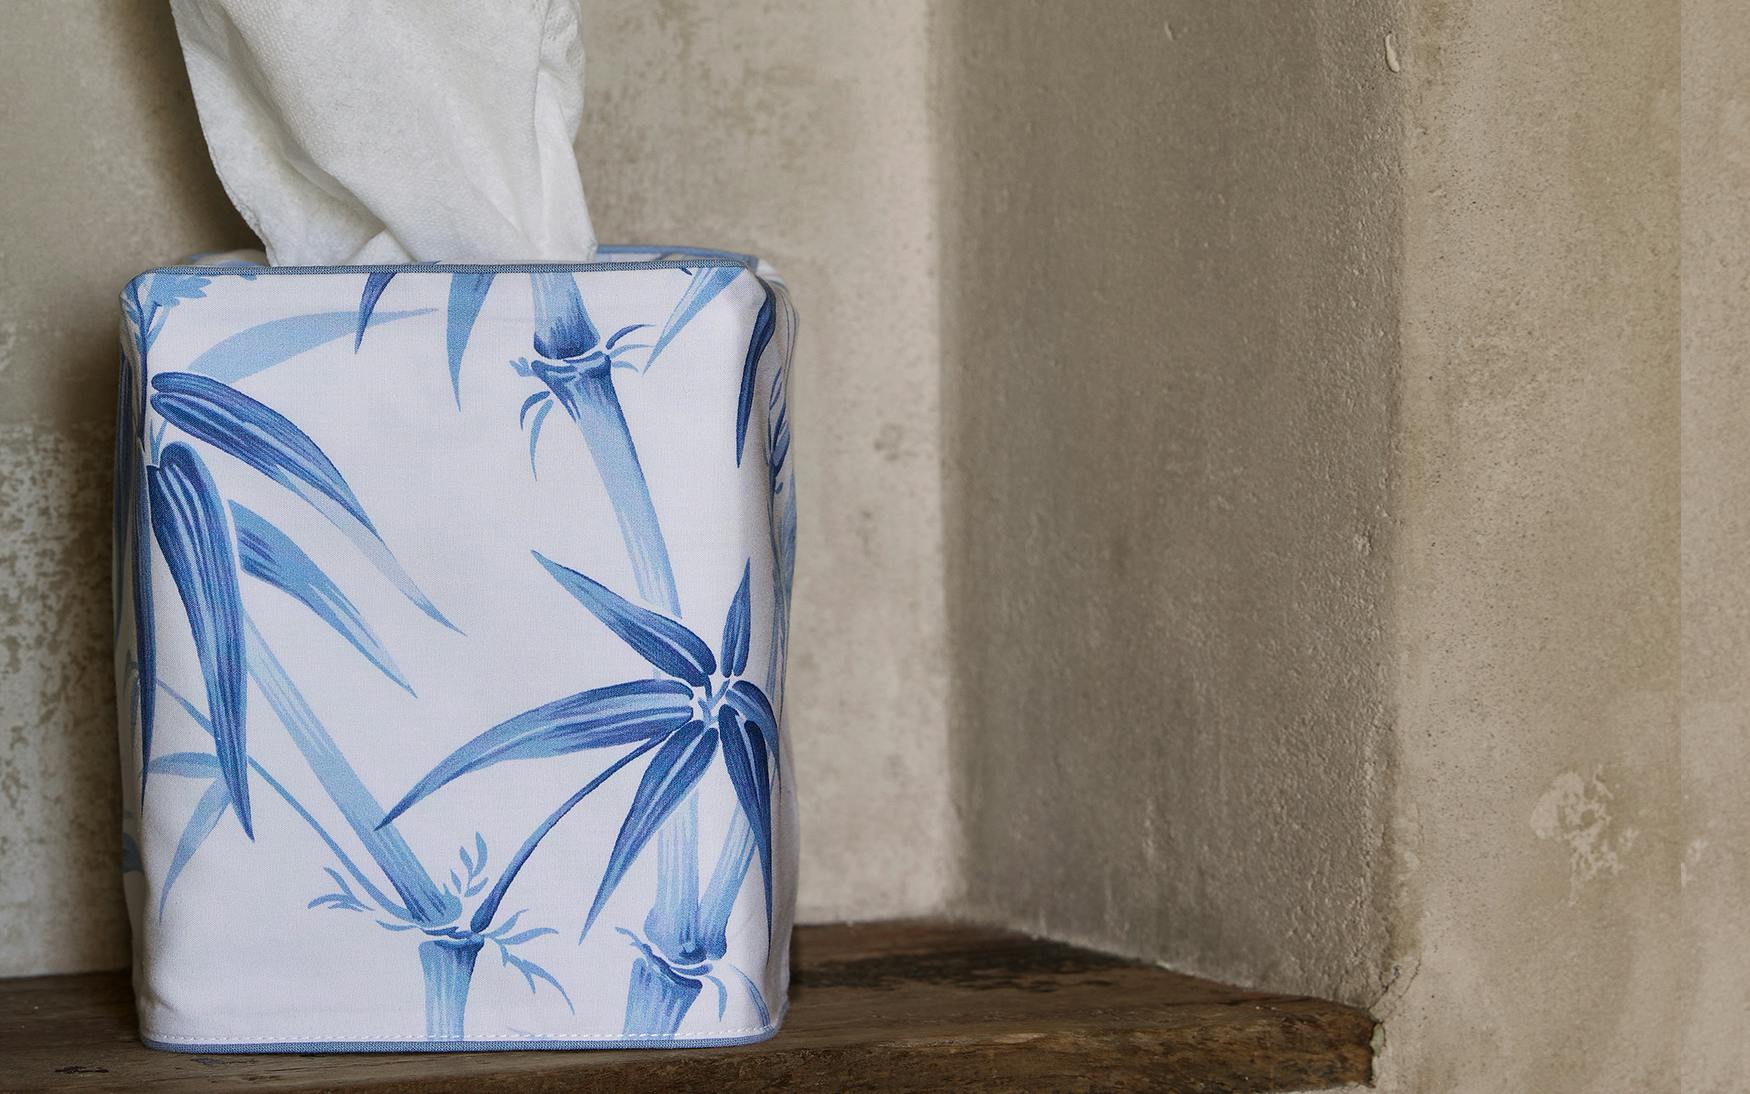 Dominique Tissue Box Cover – Sotre Collection